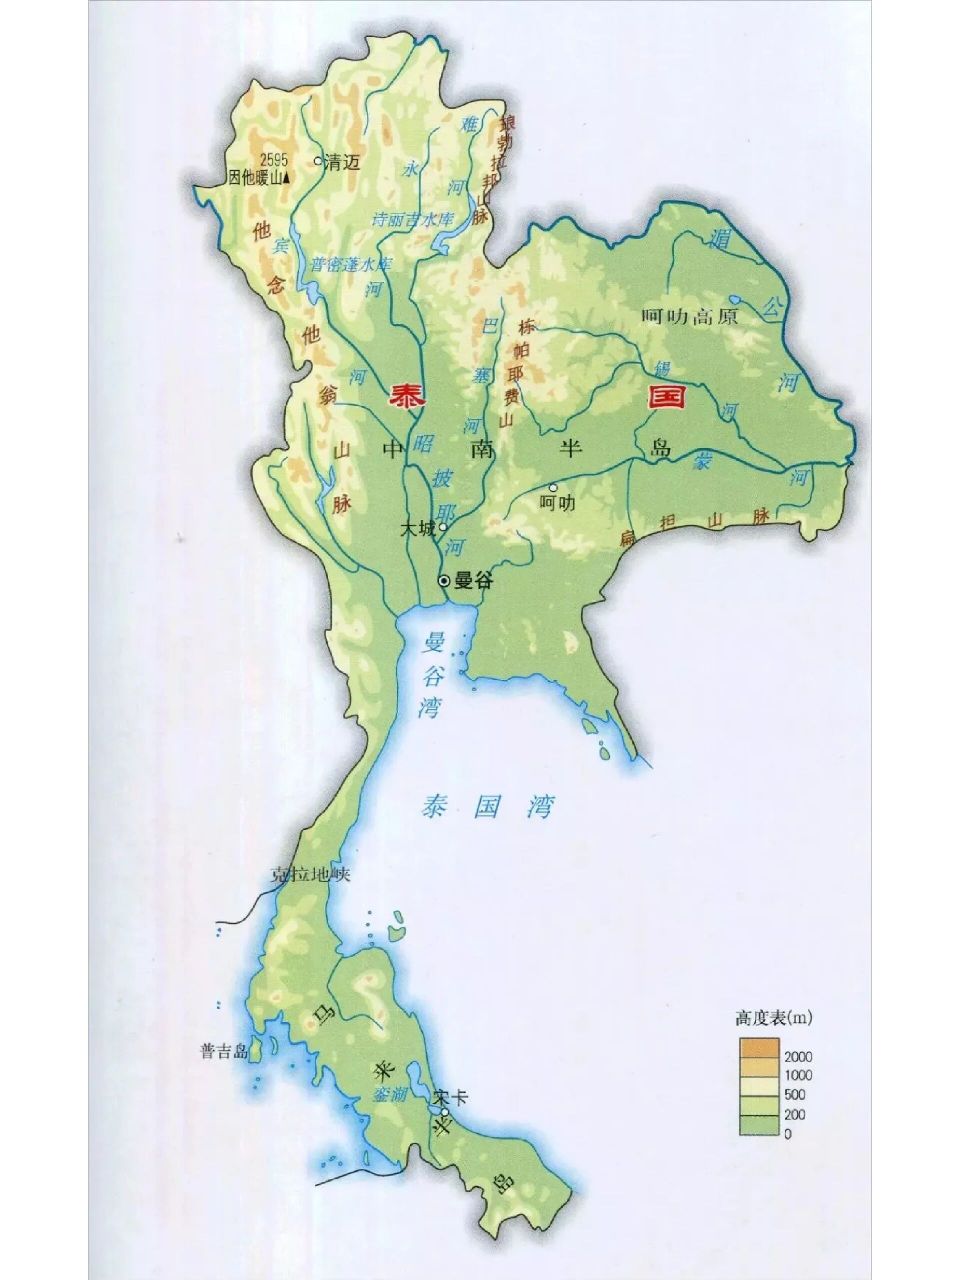 泰国地理位置图 泰国可以算亚洲地理位置最好的国家之一